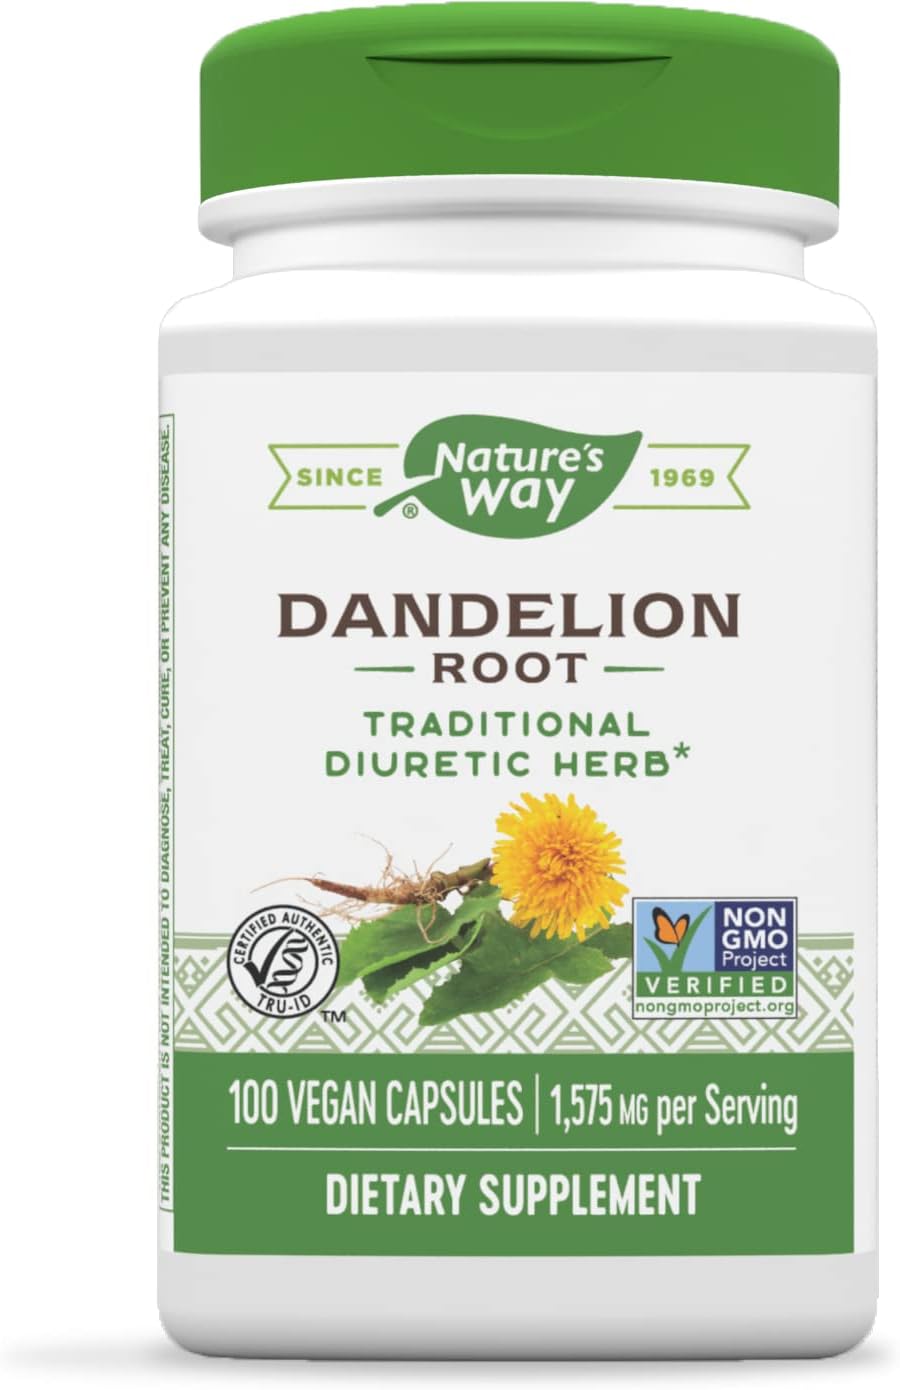 Natures Way Dandelion Root, Traditional Diuretic Herb*, 100 Vegan Capsules